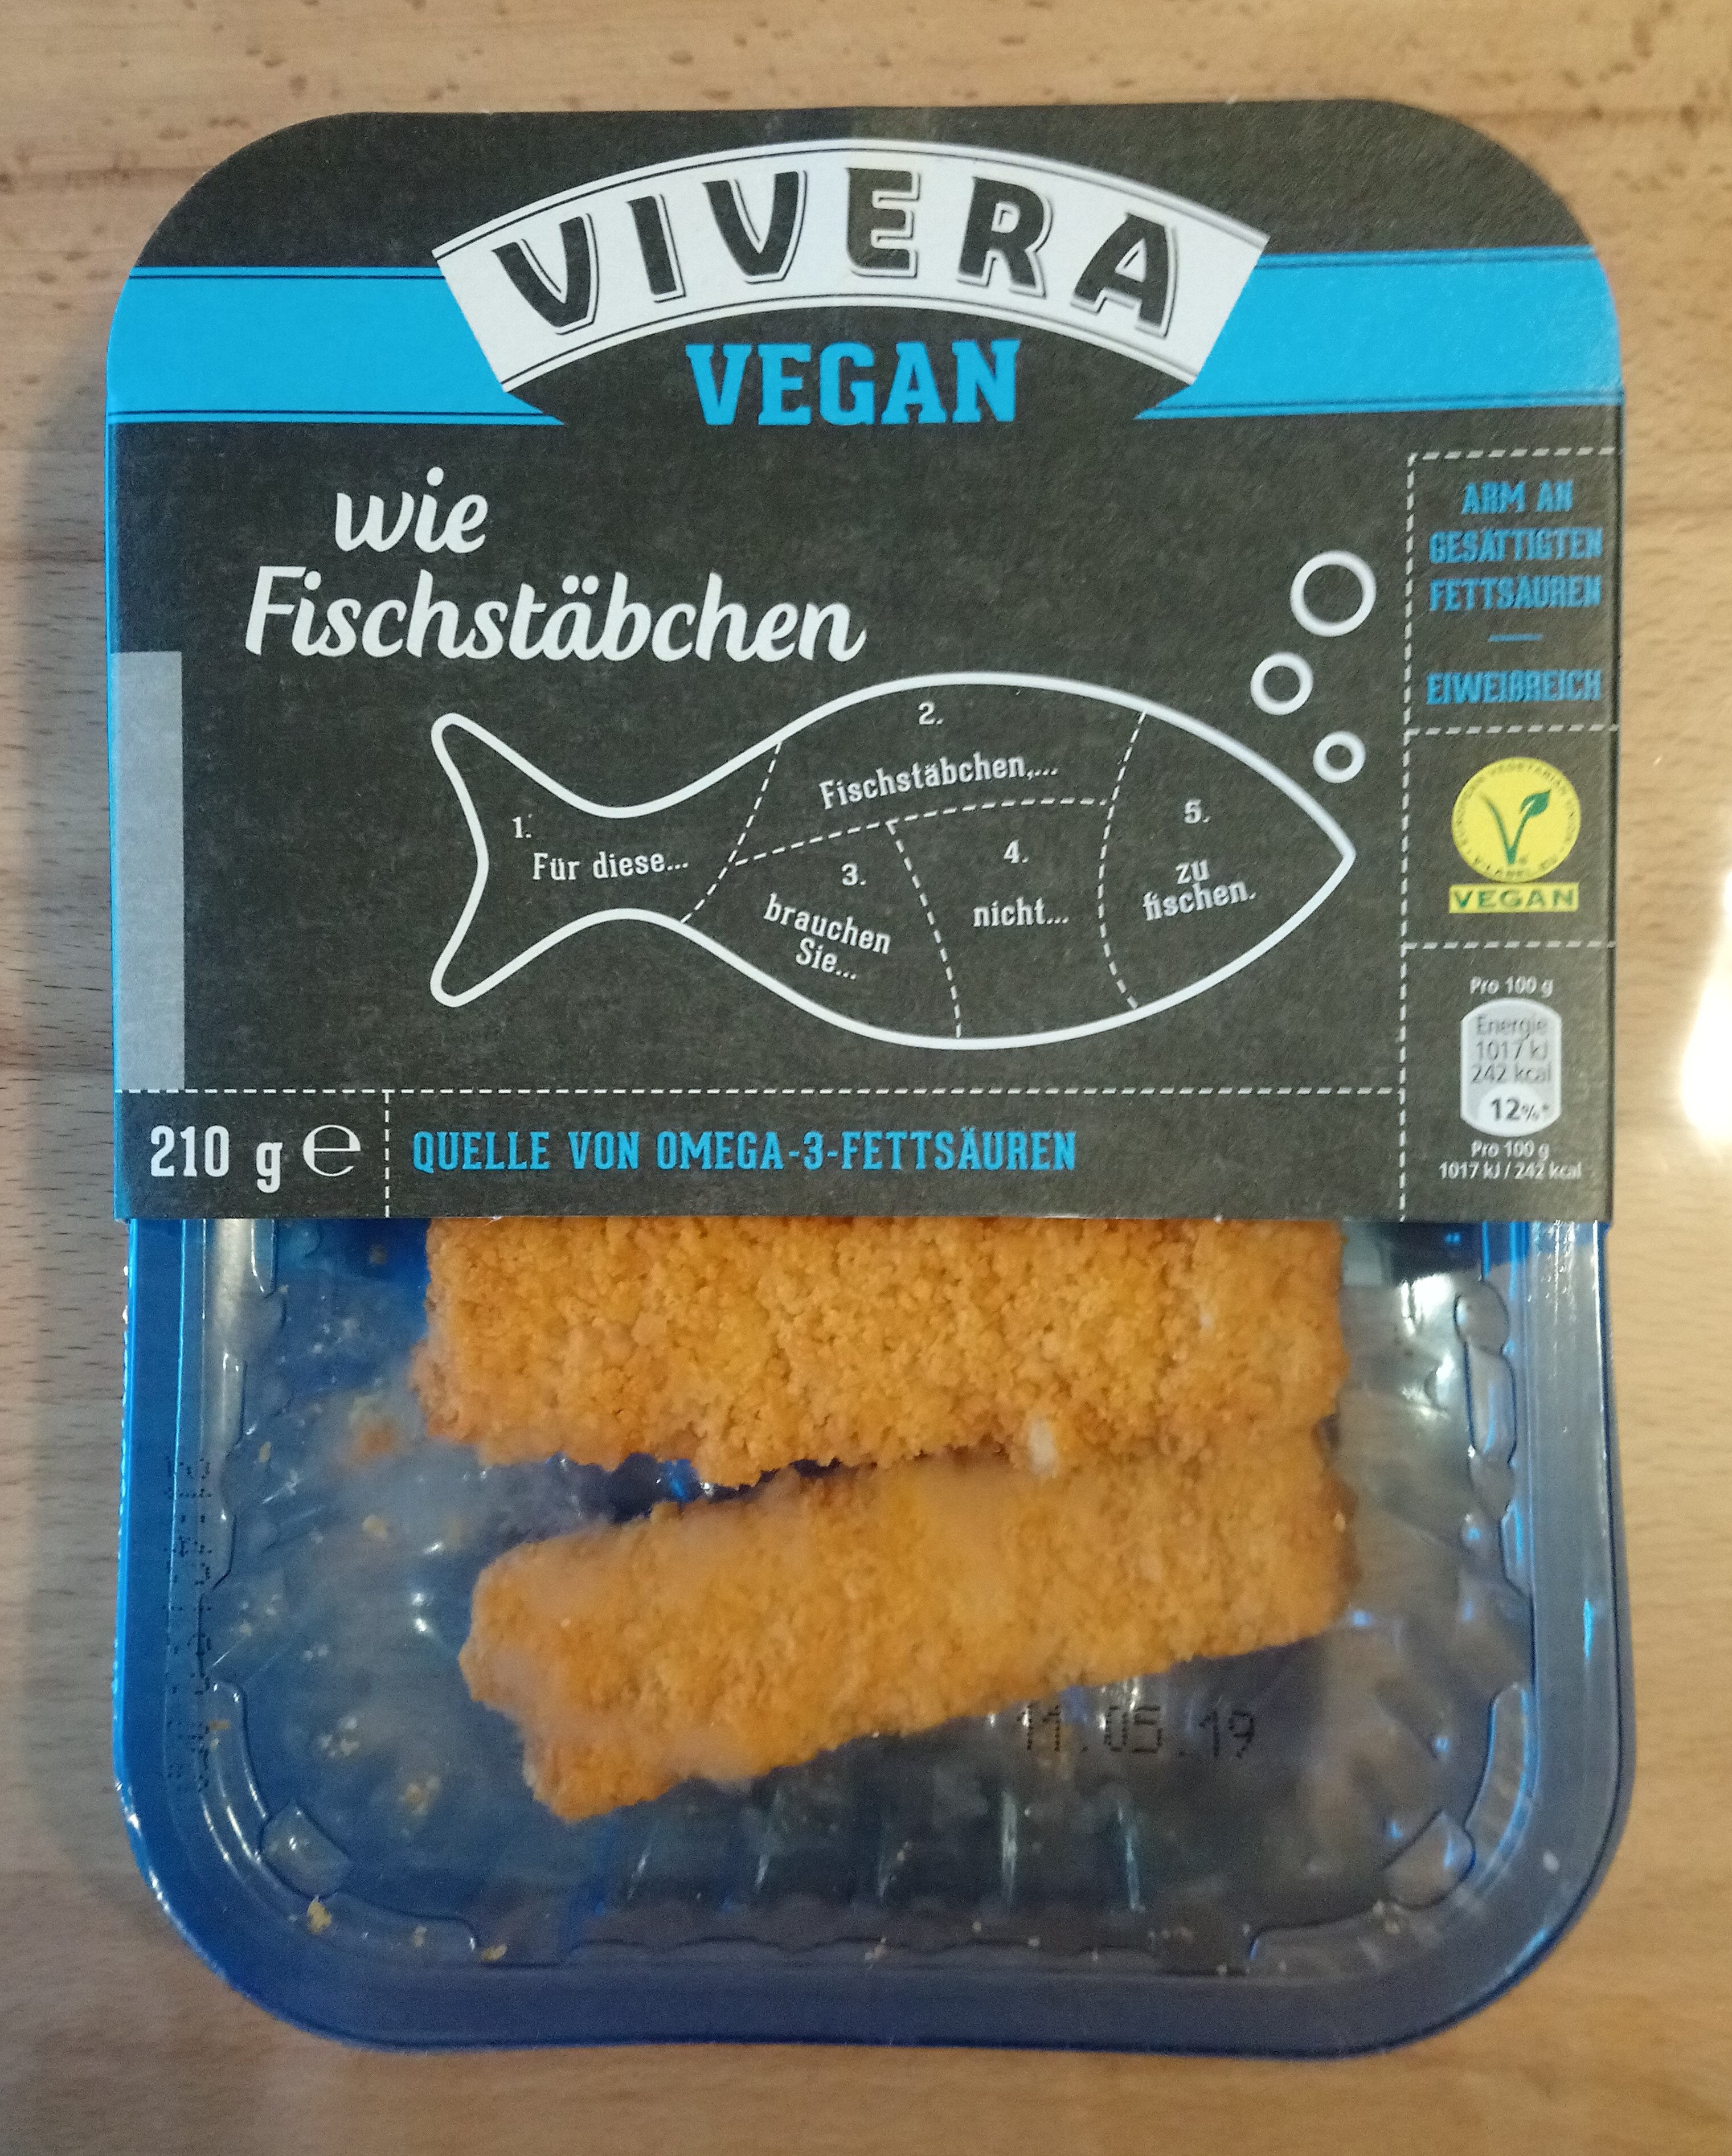 Stick de poissons vegan - Prodotto - de